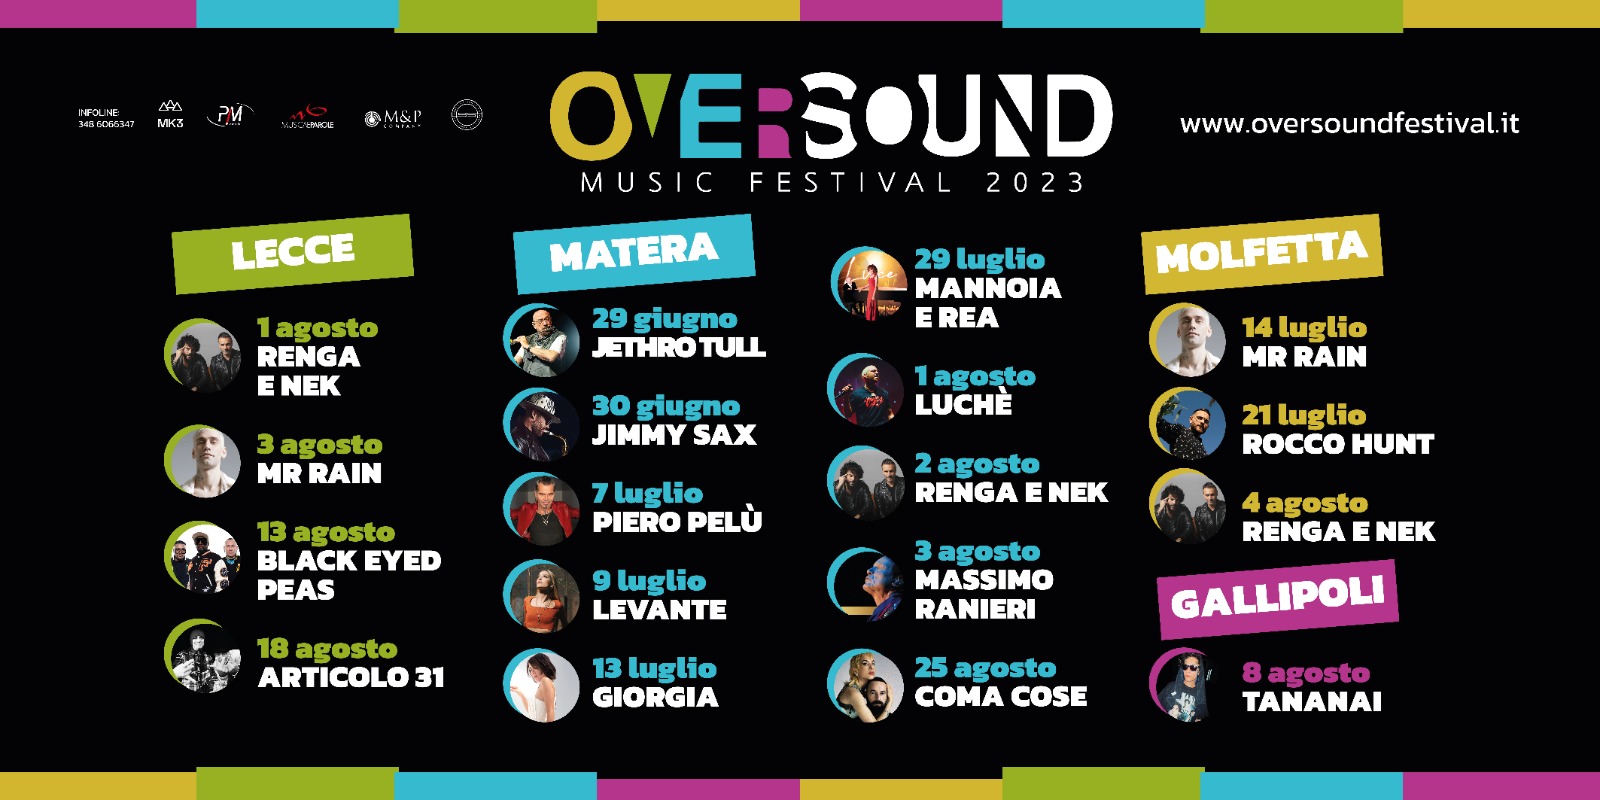 Oversound Music Festival: tutte le date della terza edizione a Matera, Lecce, Gallipoli, e Molfetta